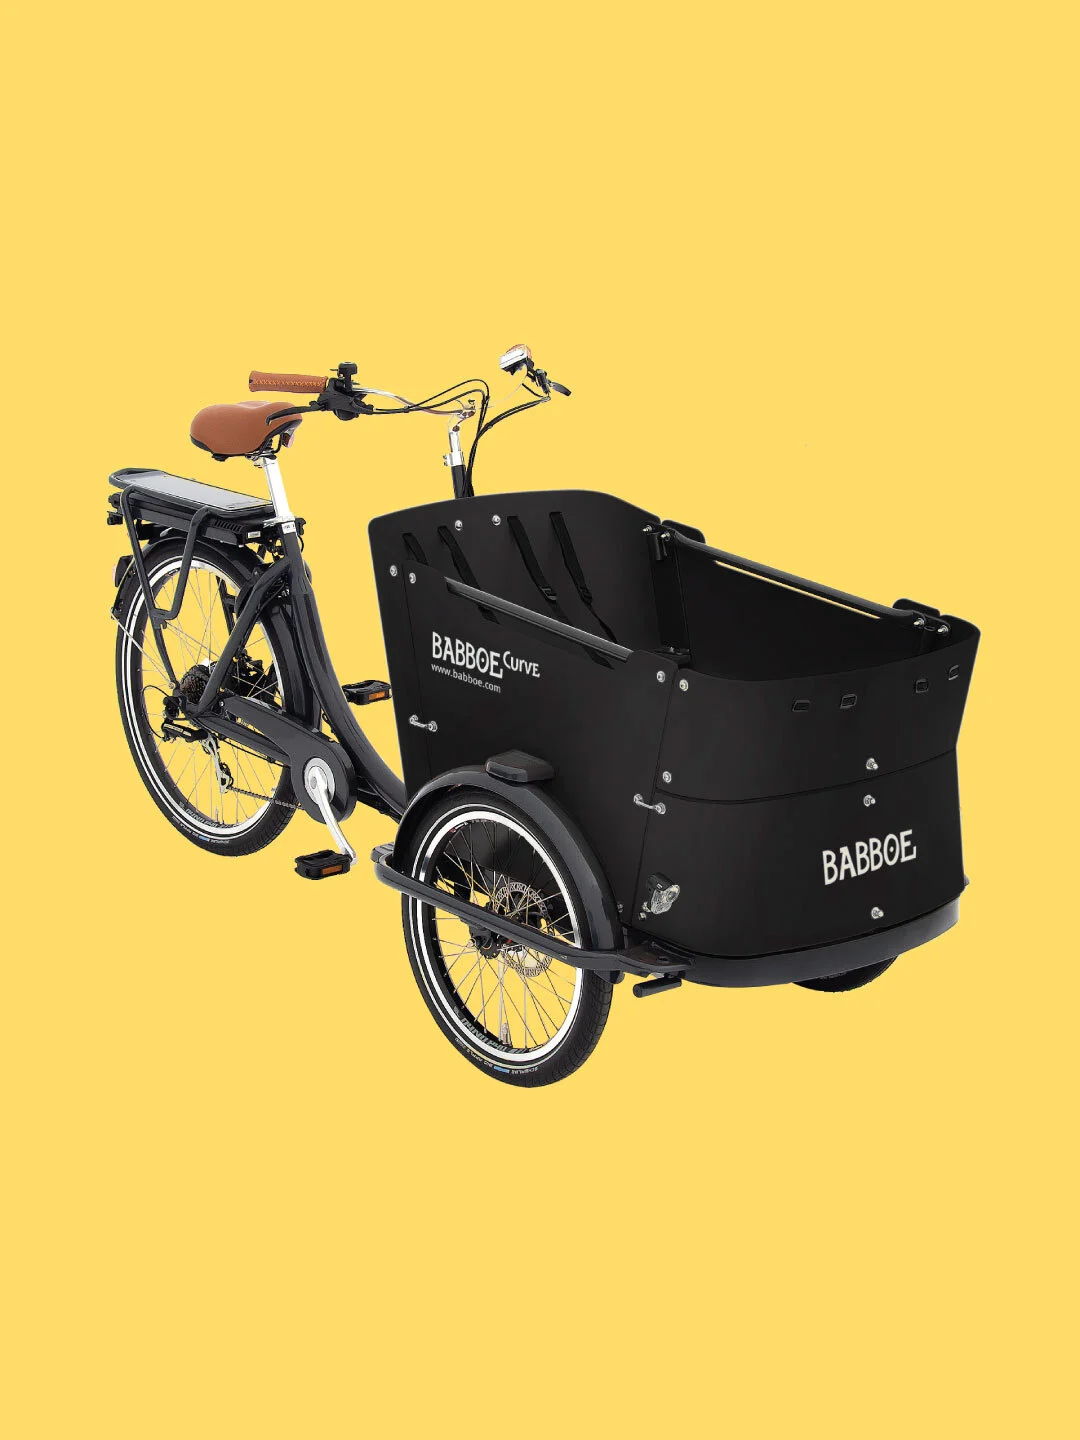 Kaufe ein share Produkt im Aktionszeitraum und gewinne eins von insgesamt drei E-Lastenrädern von Babboe.